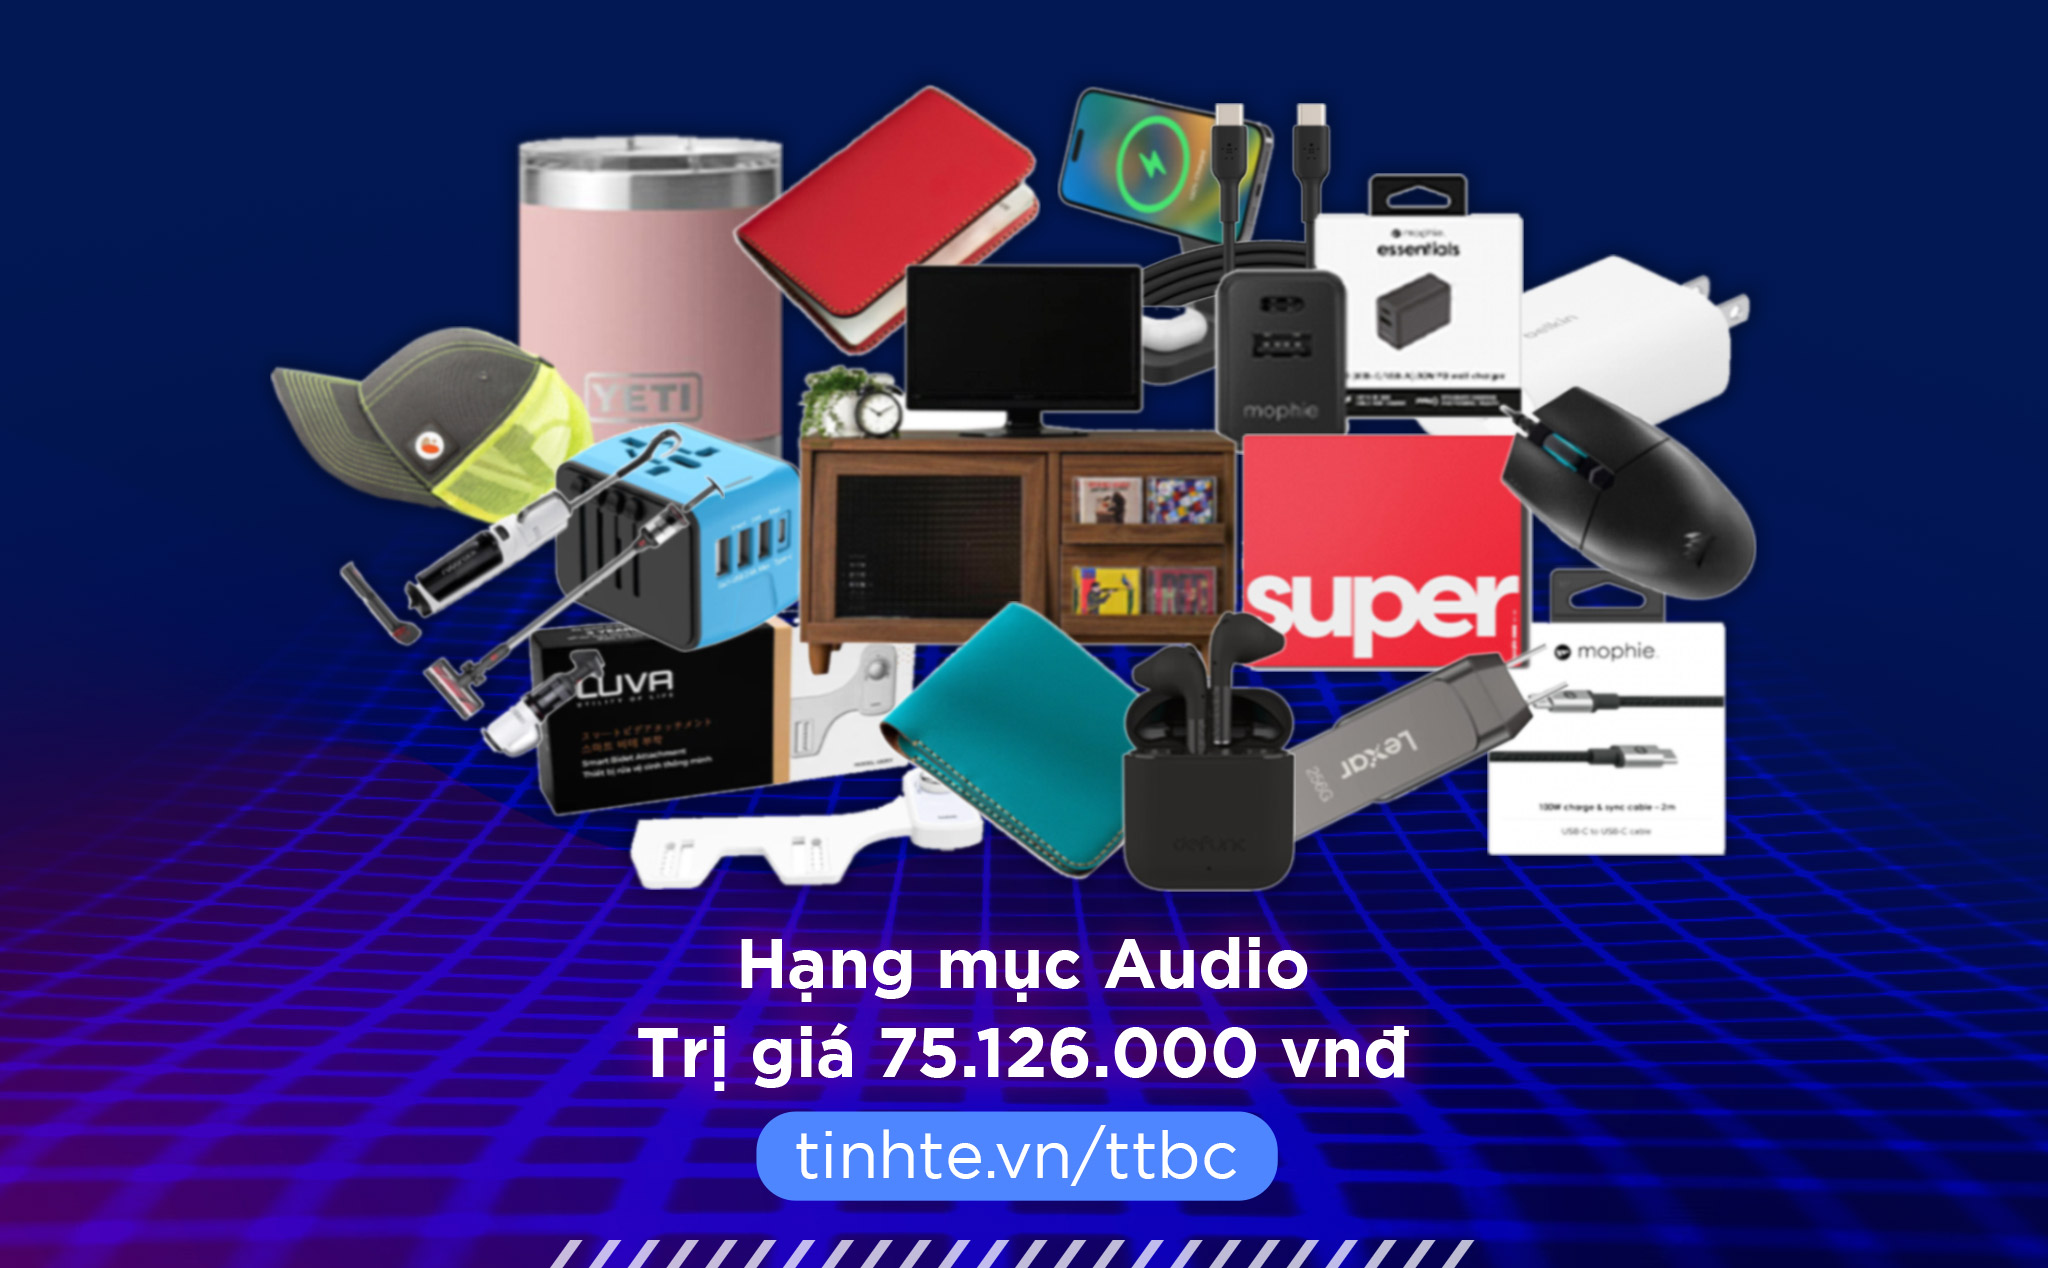 TTBC23: Mời bình chọn hạng mục Audio trúng quà trị giá hơn 75 triệu